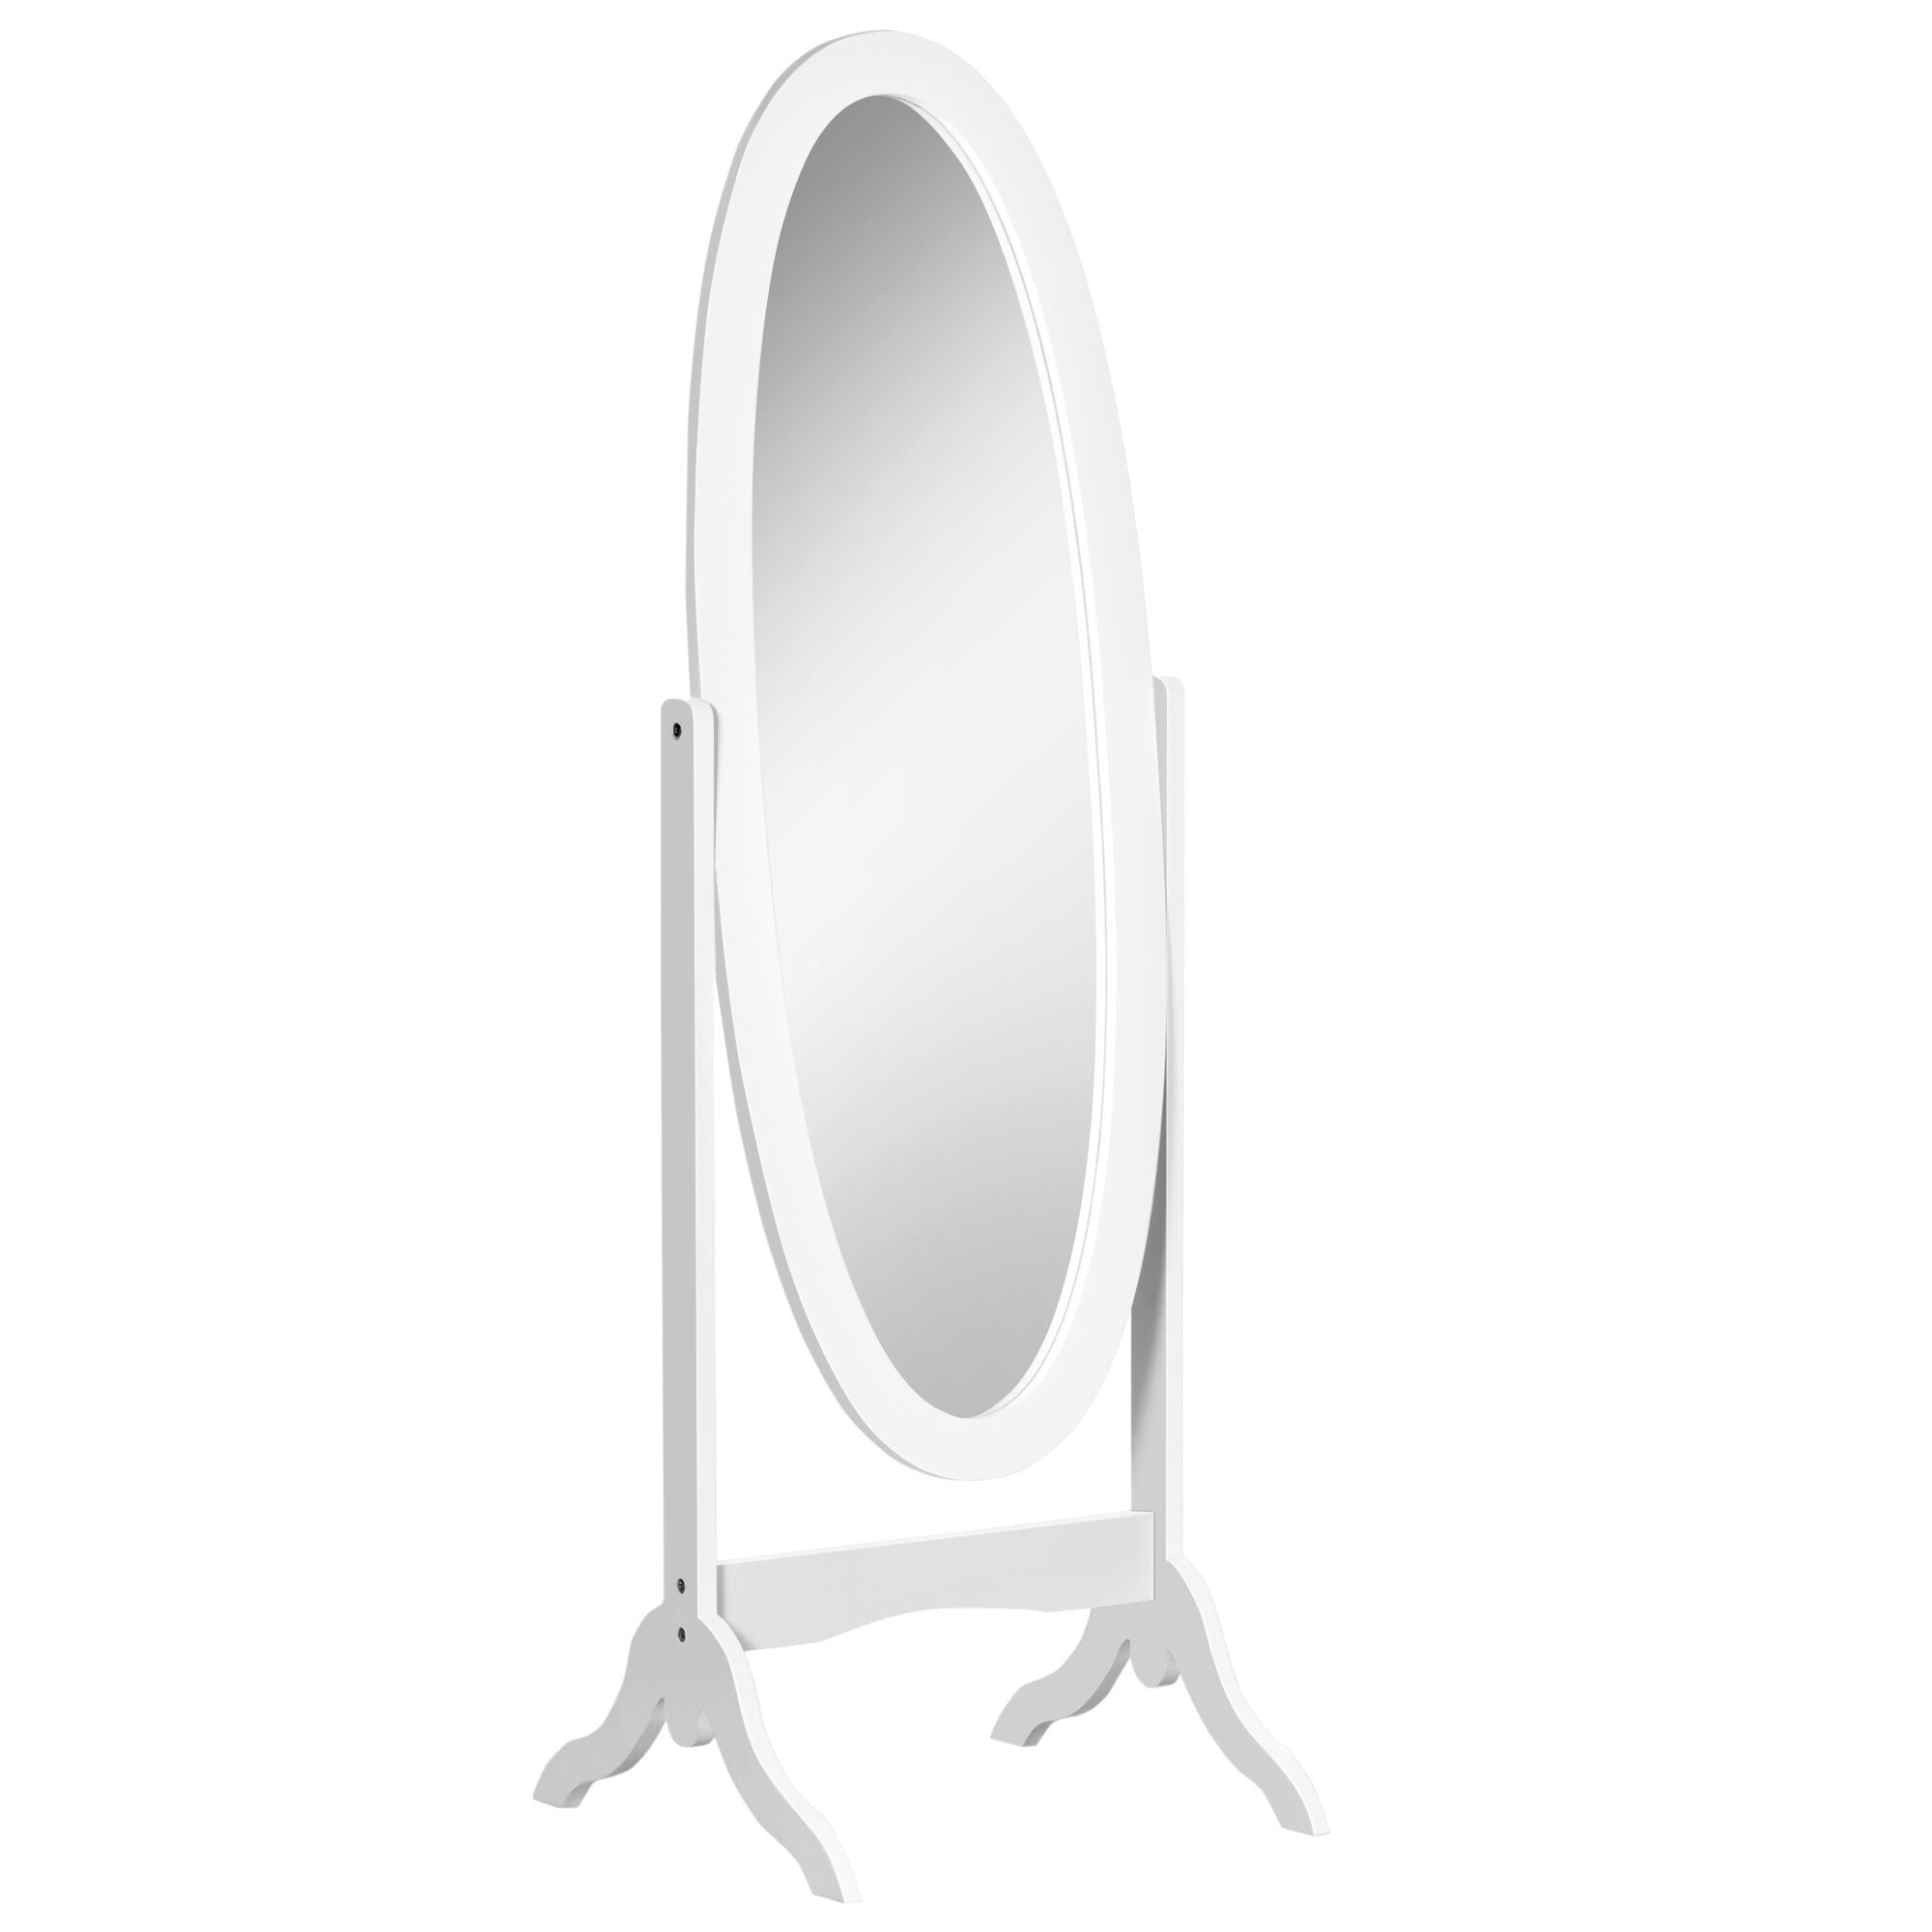 Homcom Specchio da Terra Ovale a Figura Intera con Inclinazione Regolabile, 47.5x45.5x154.5cm, Bianco